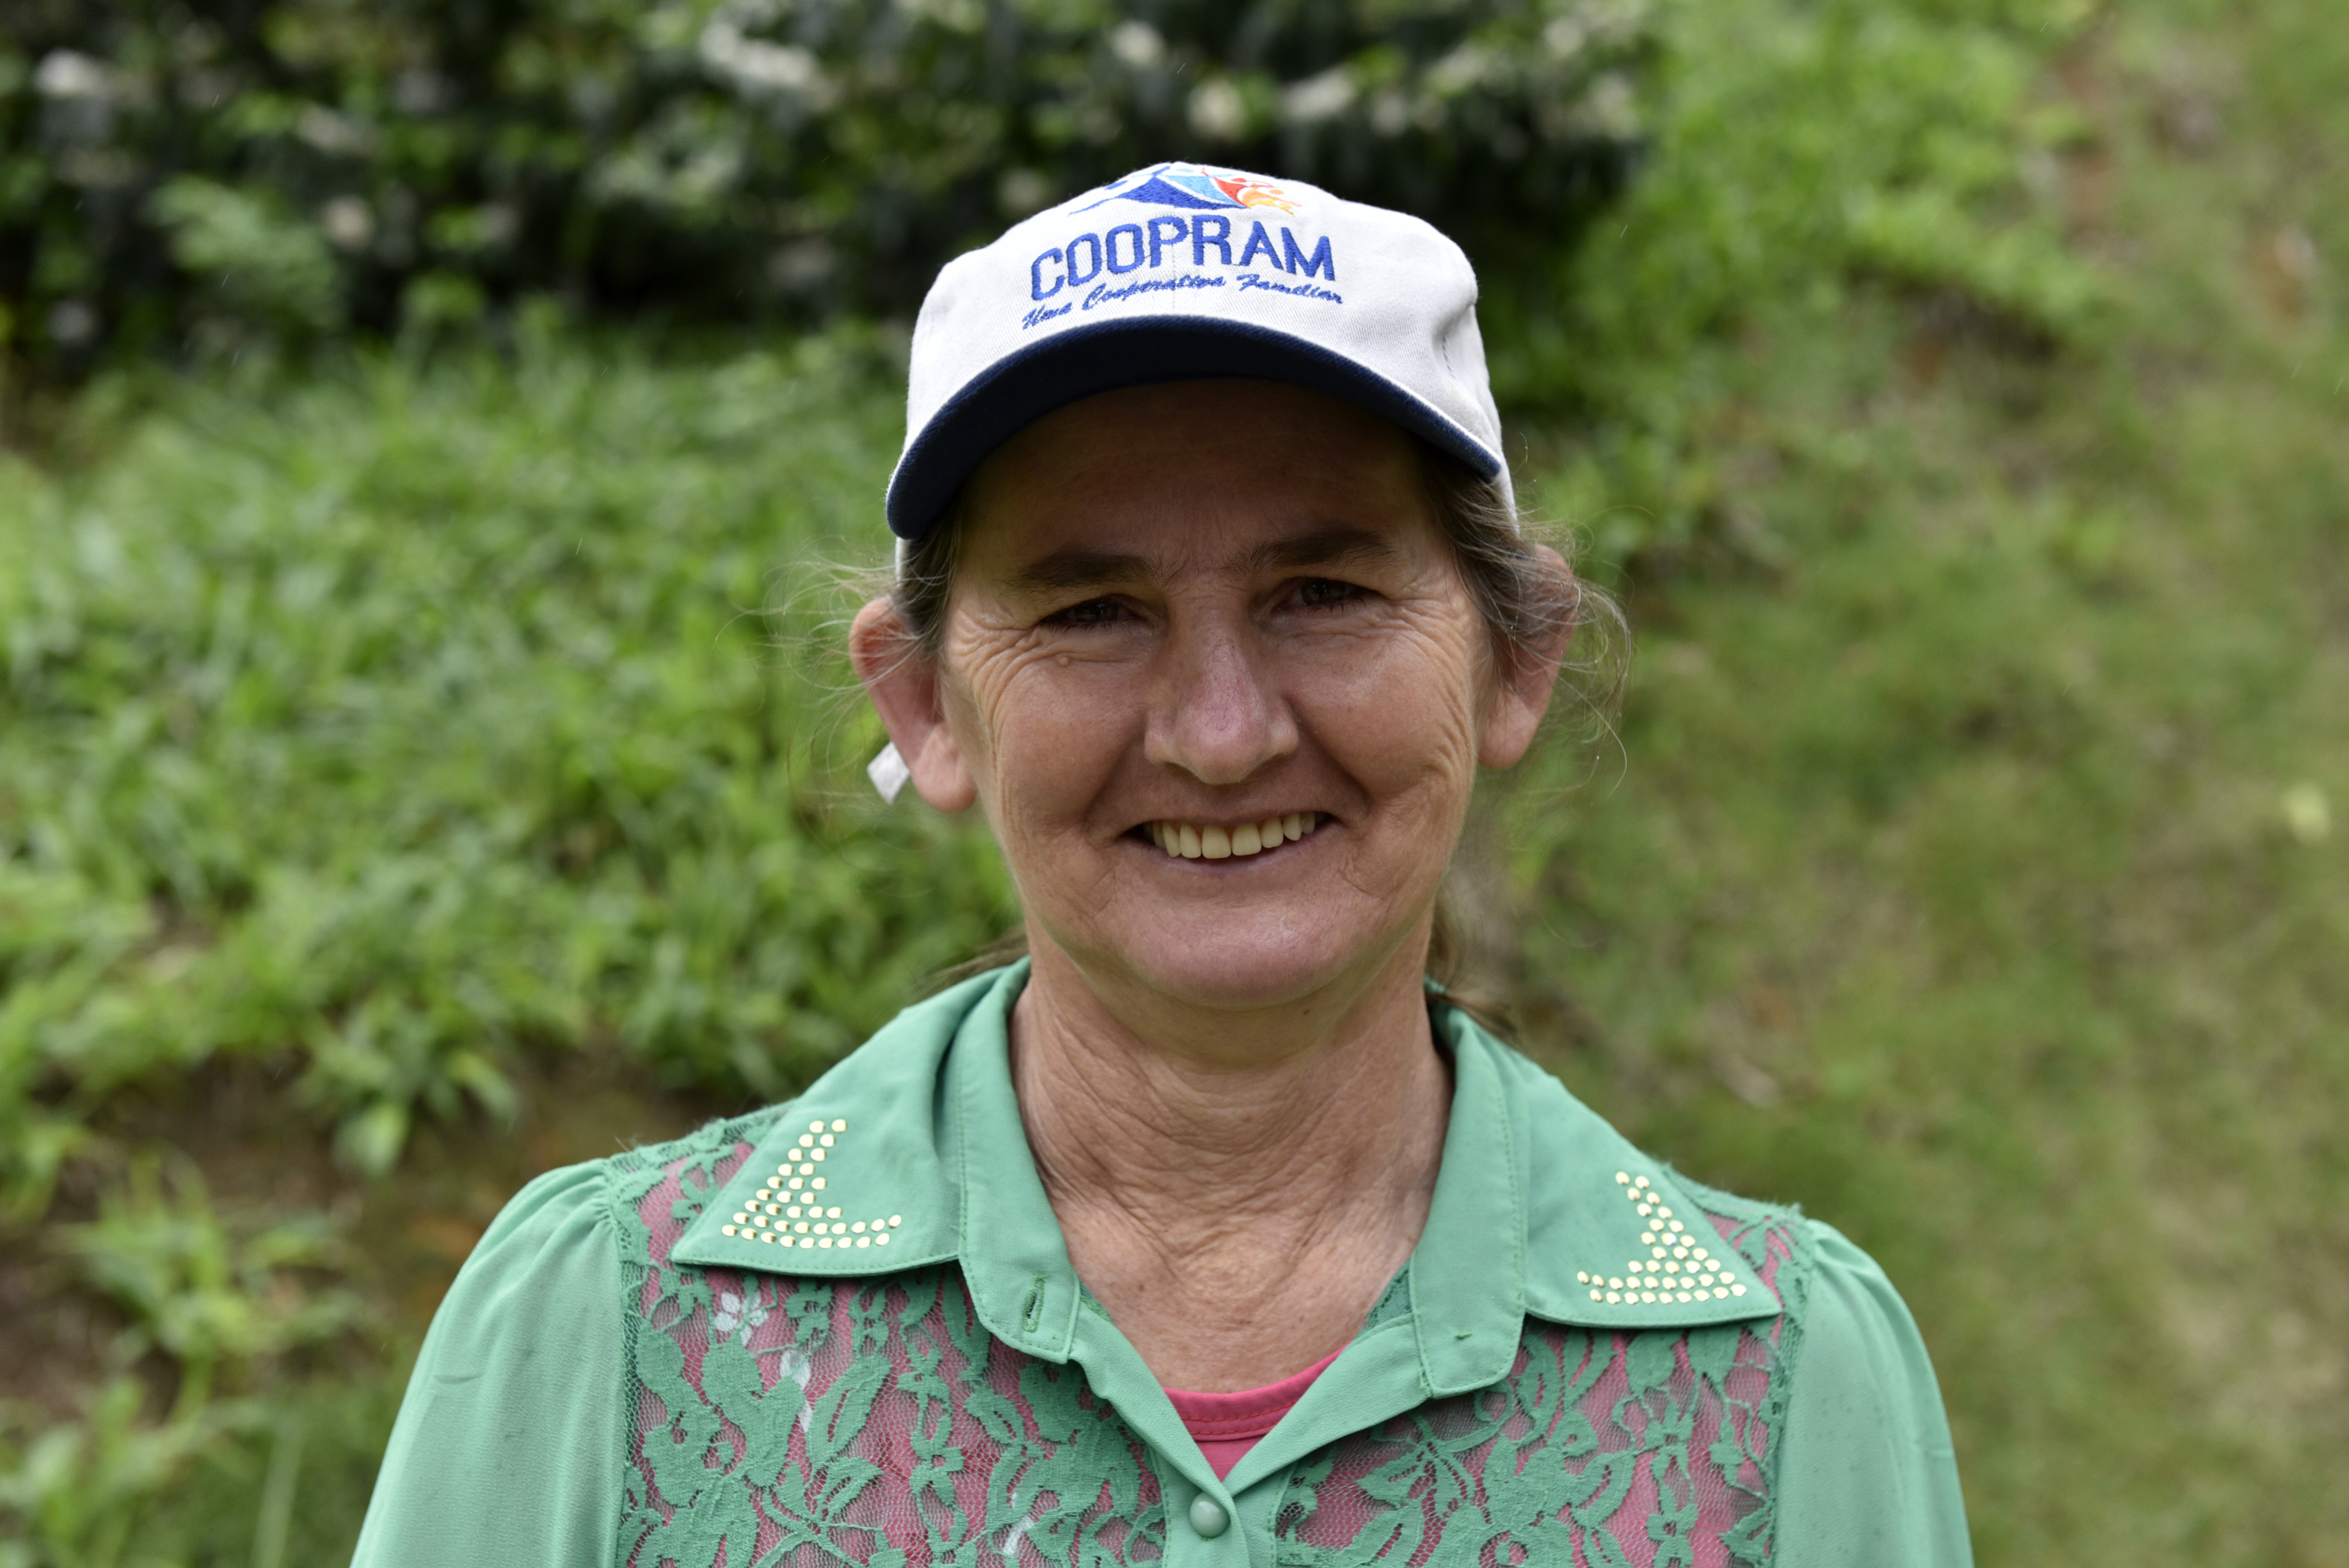 Joselia Wruck, agricultor do Distrito de Paraju, Domingos Martins, E.S